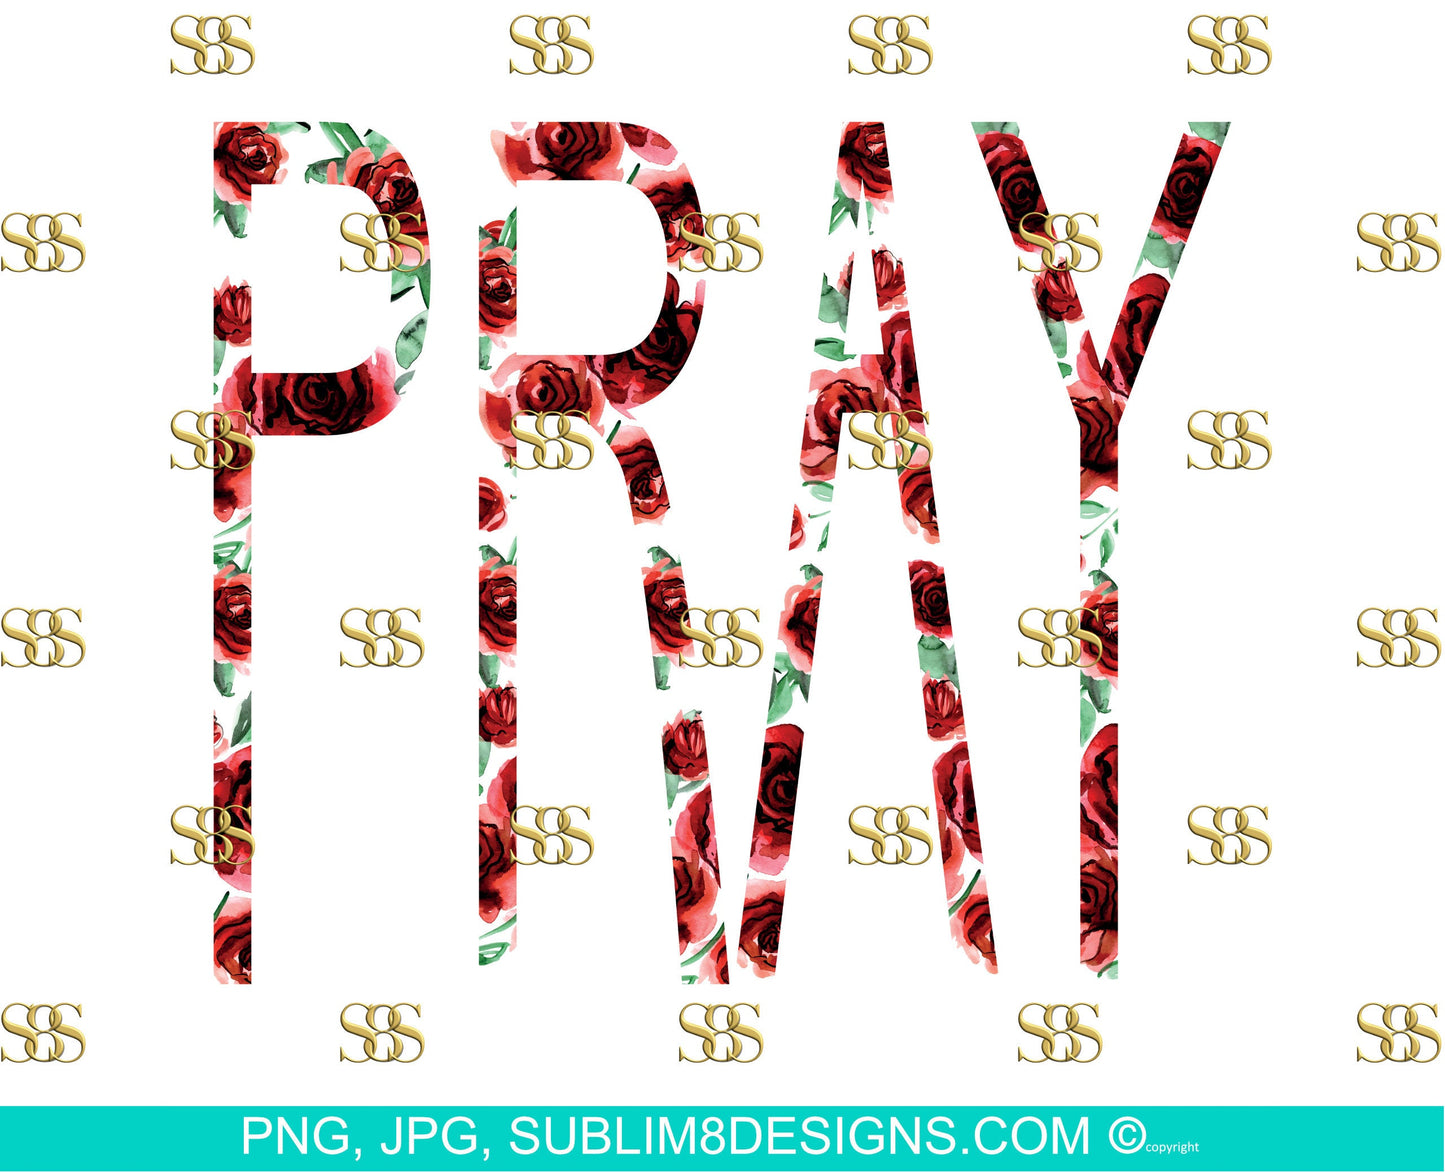 Pray Bundle | Pray | No Background and Background | Floral Design | Rose png | God png | Sublimation Design PNG and JPG ONLY